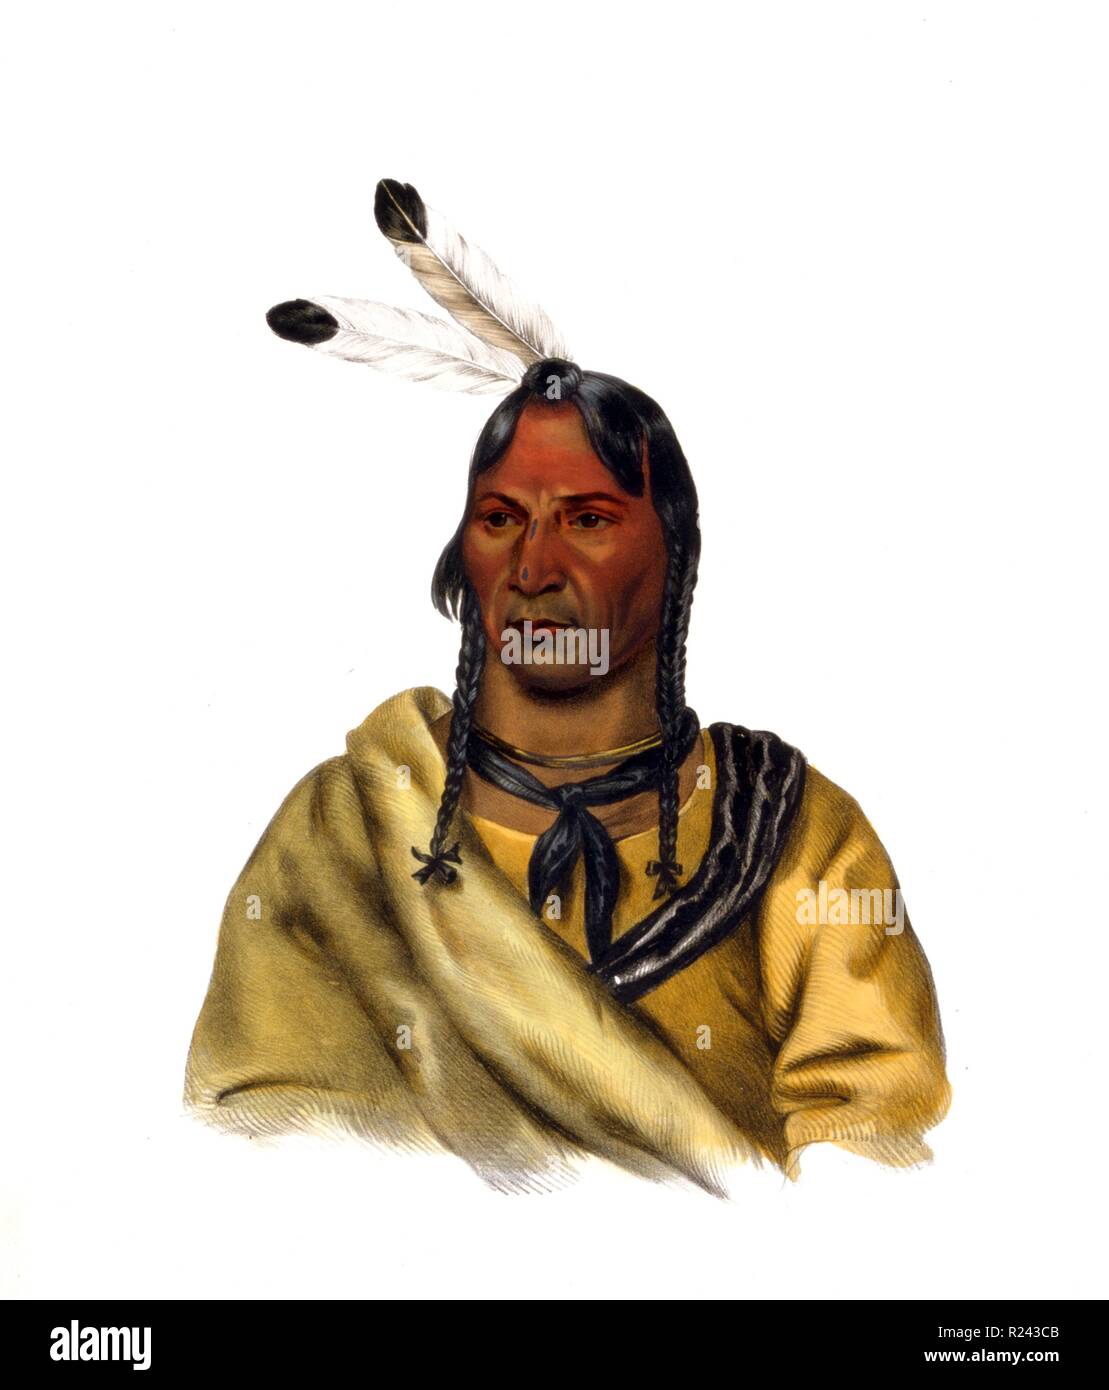 Handkolorierten Lithographie von Esh-Ta-Hum-Leah, ein Sioux Häuptling. Datiert 1838 Stockfoto